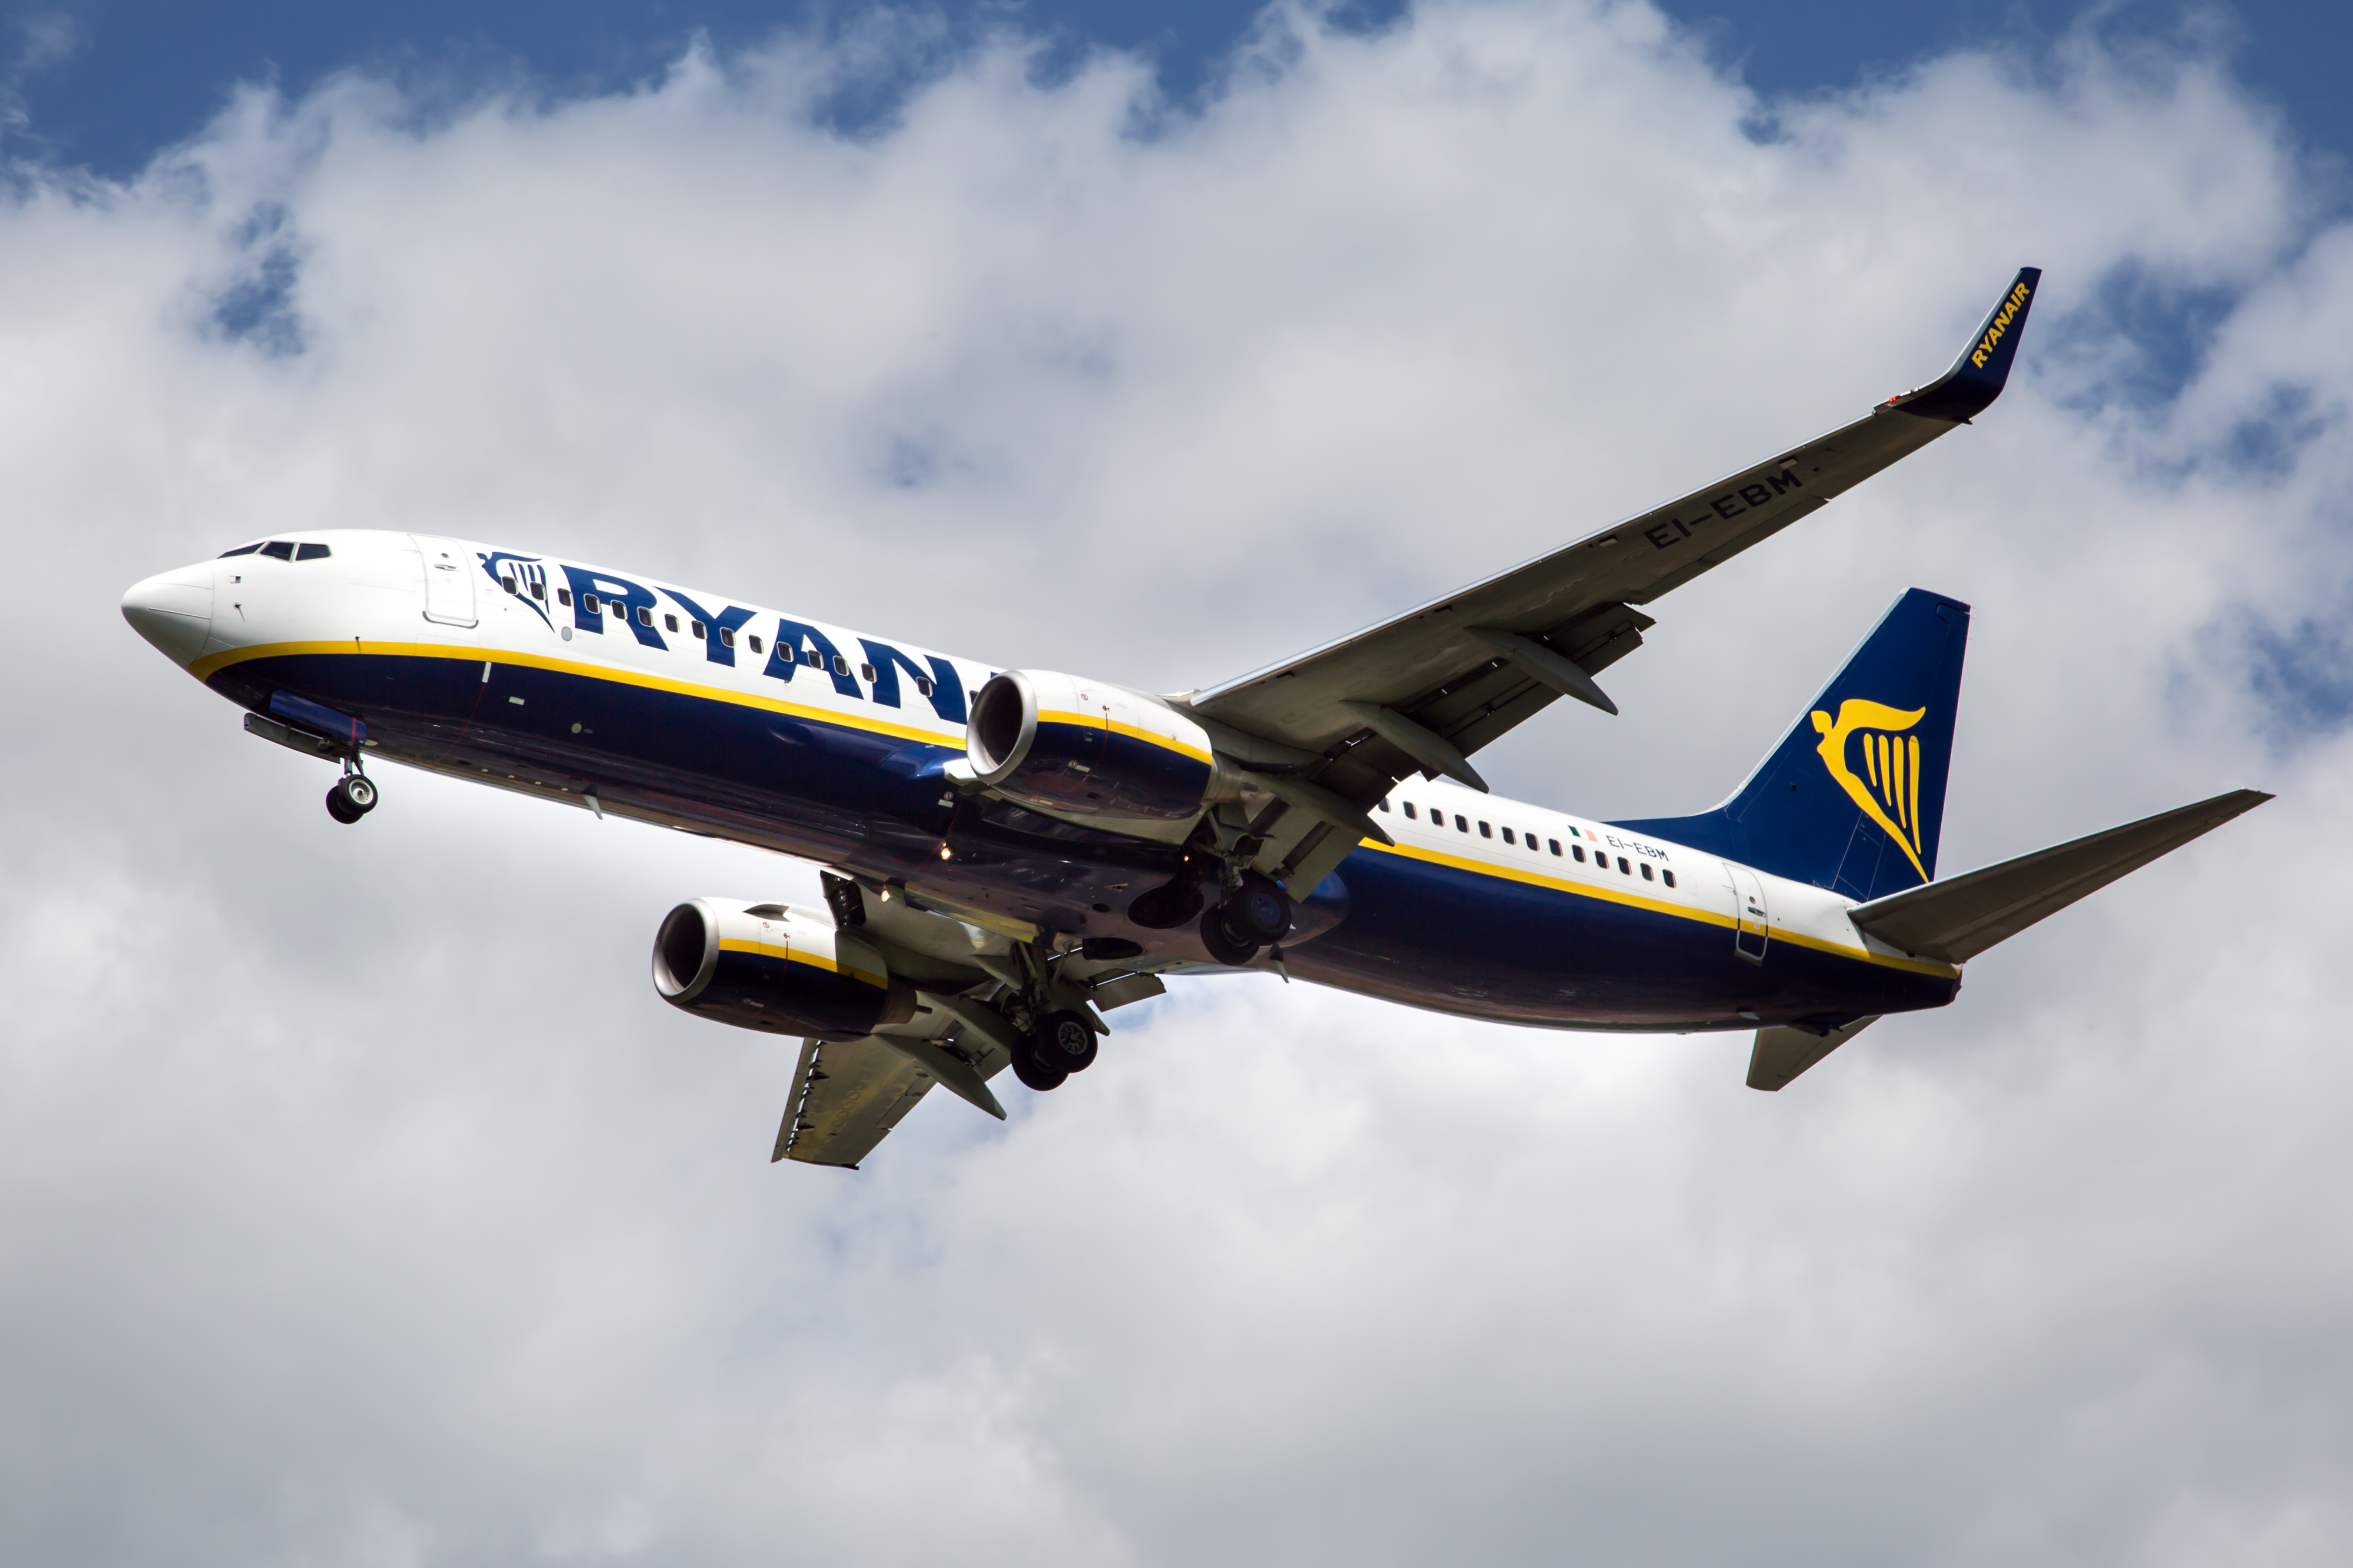 L'equipaggio Ryanair farà sciopero in quattro paesi diversi e si prevedono ritardi e cancellazioni dei voli in tutta Europa